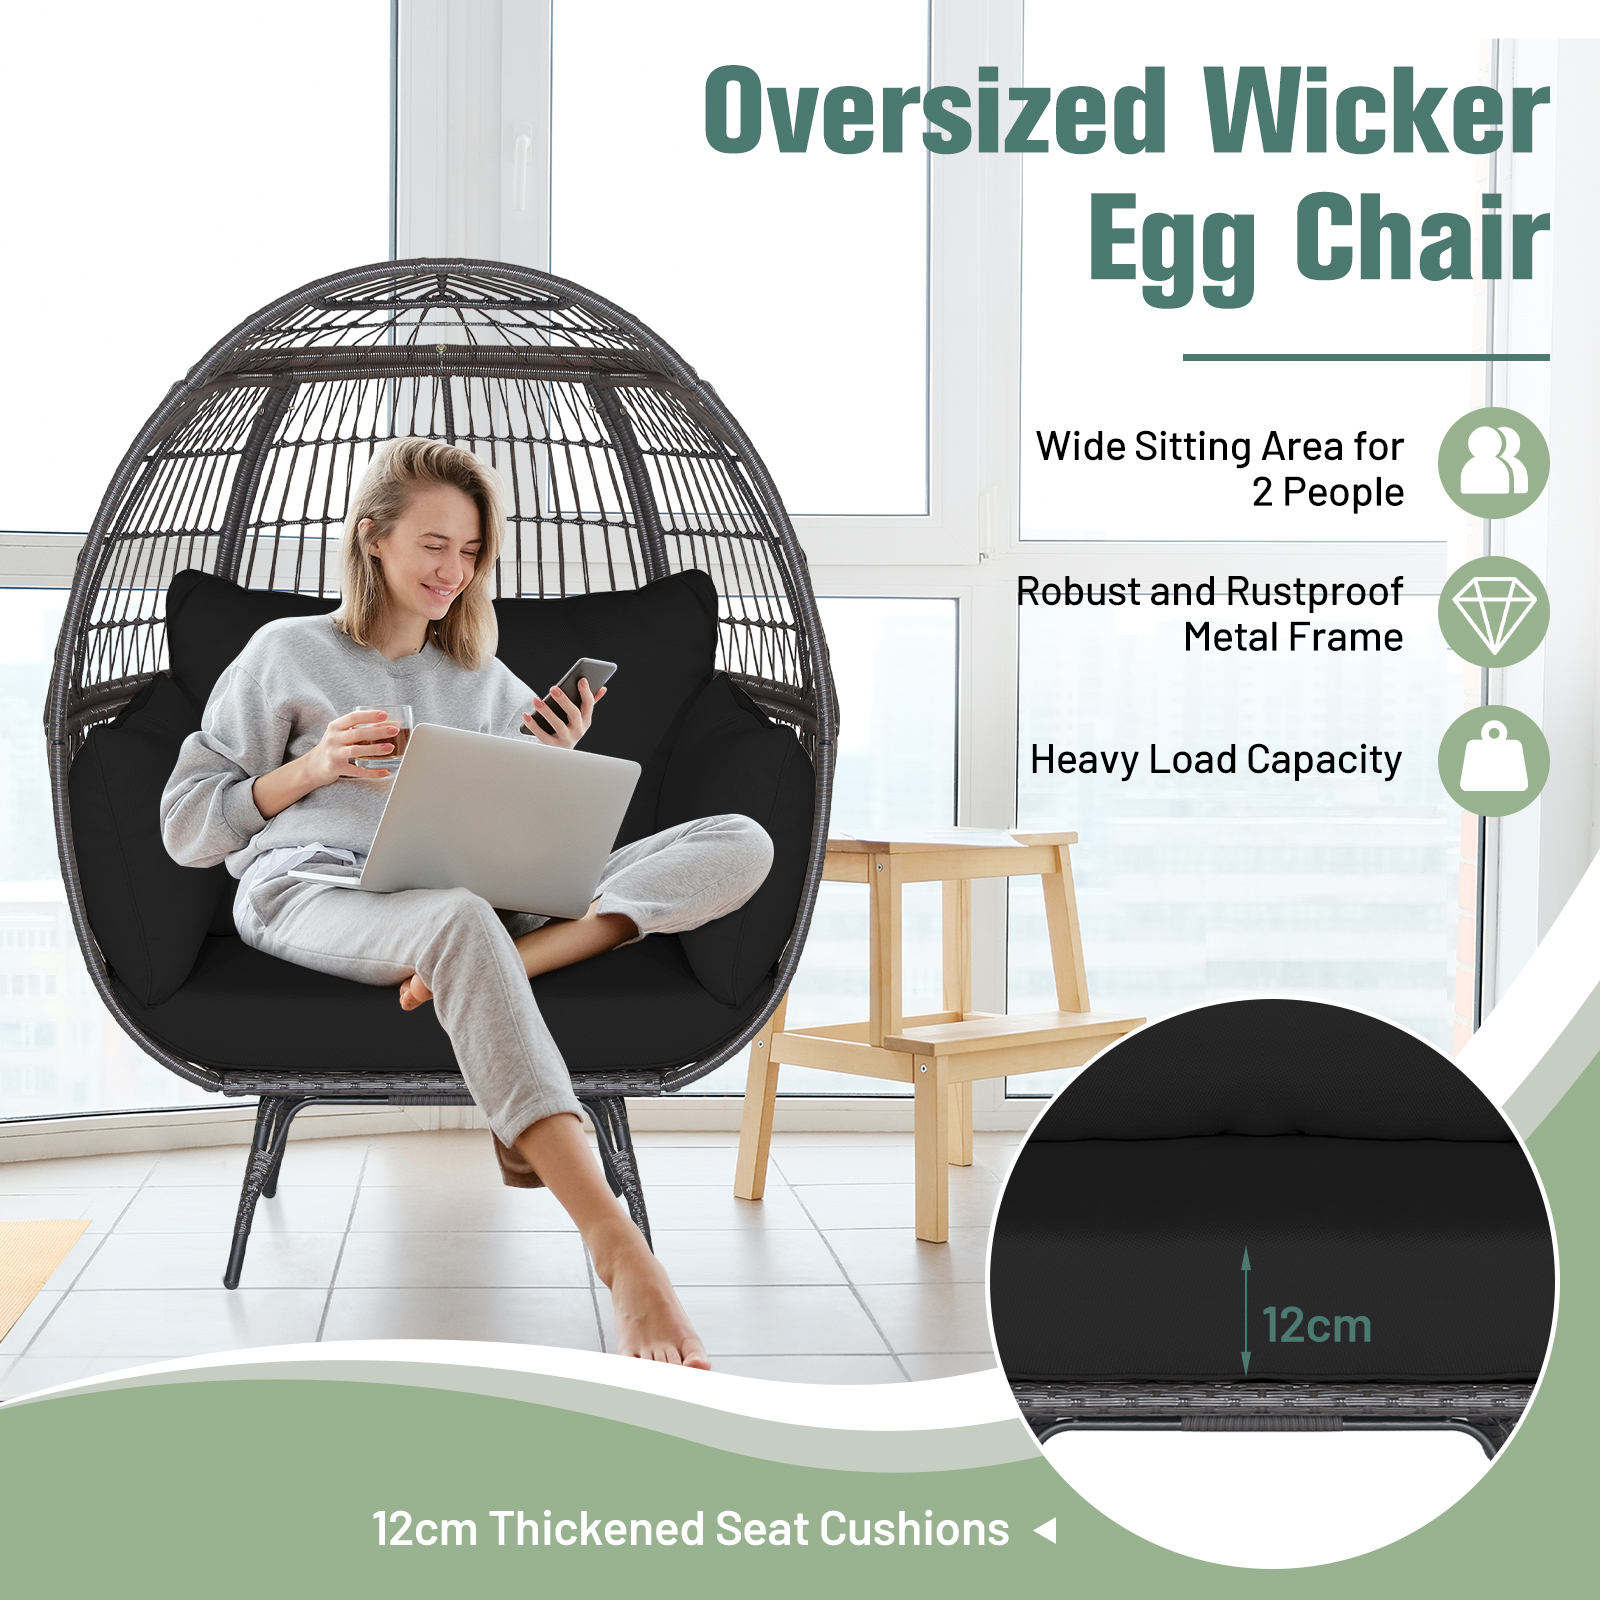 Oversized_Wicker_Egg_Chair-6.jpg